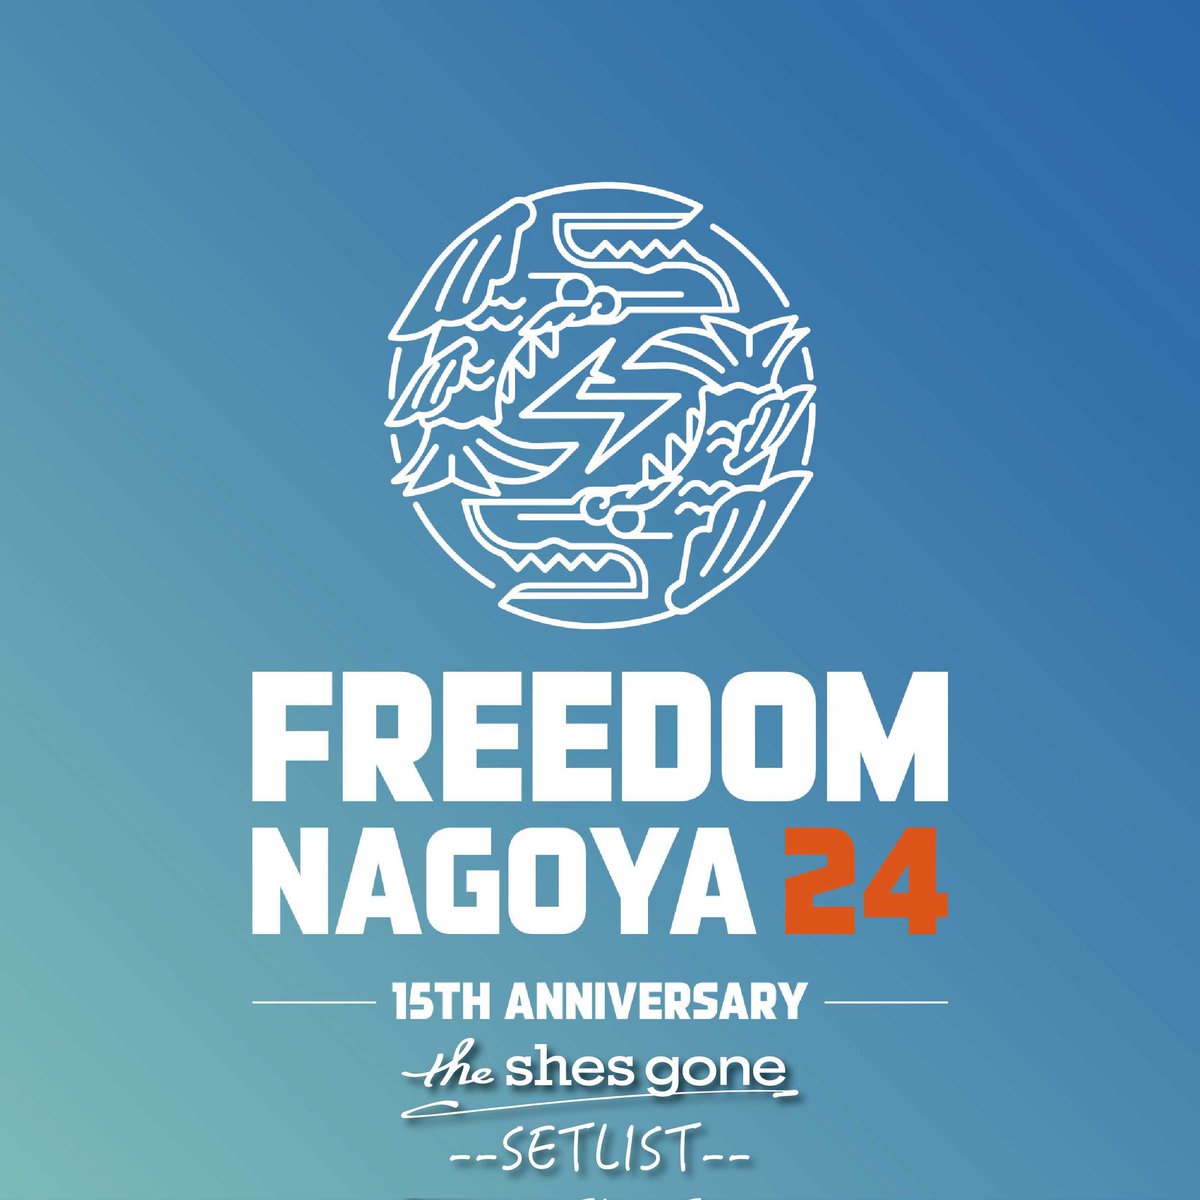 「FREEDOM NAGOYA 24」
↓セットリストプレイリスト公開！
theshesgone.lnk.to/freedom240519

 #FREEDOM_NAGOYA